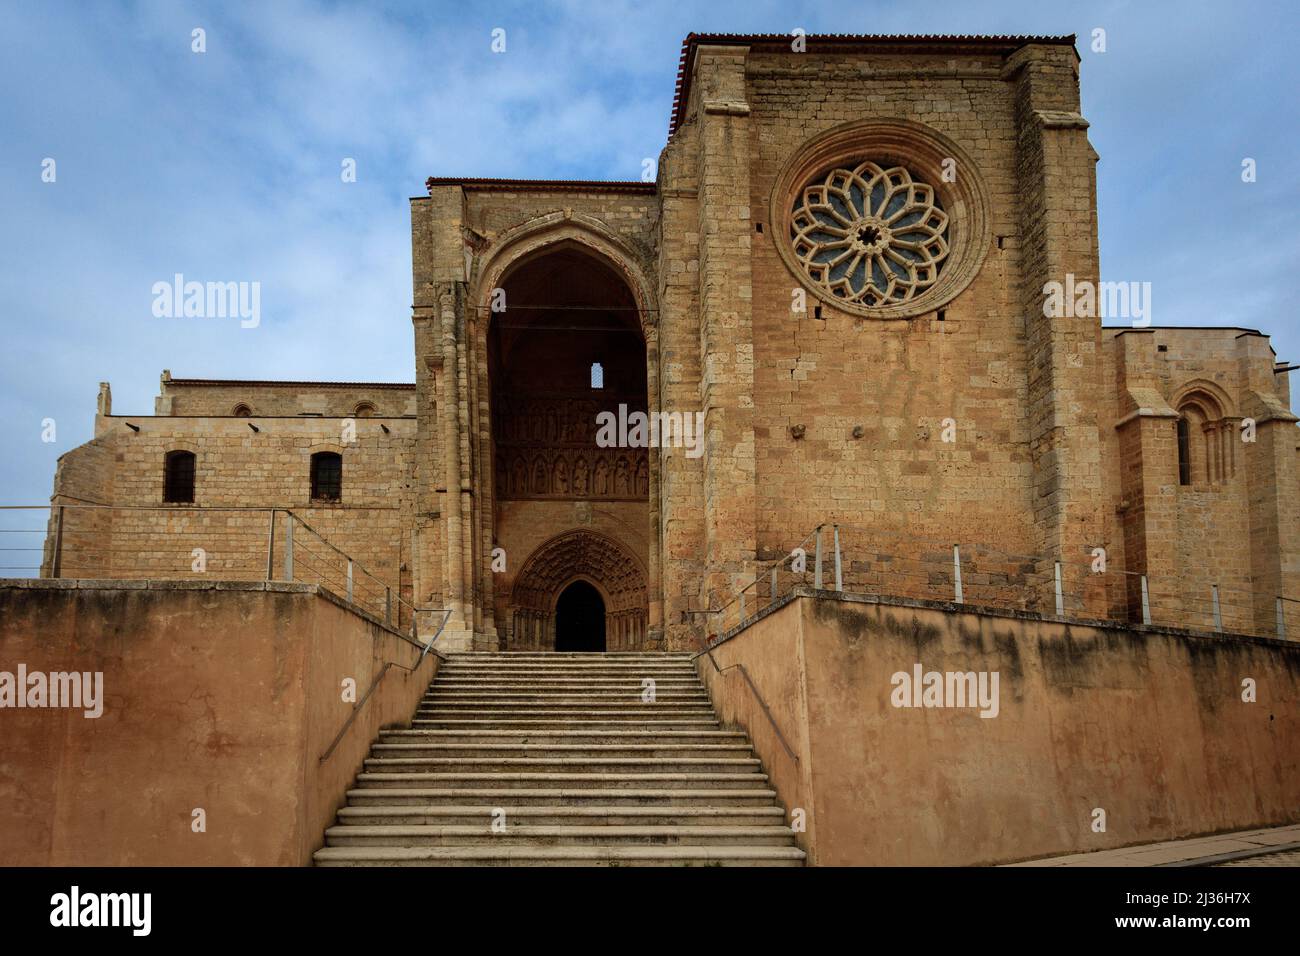 The Romanesque church Santa Maria la Blanca of Villalcazar de Sirga in Palencia. Spain. Stock Photo